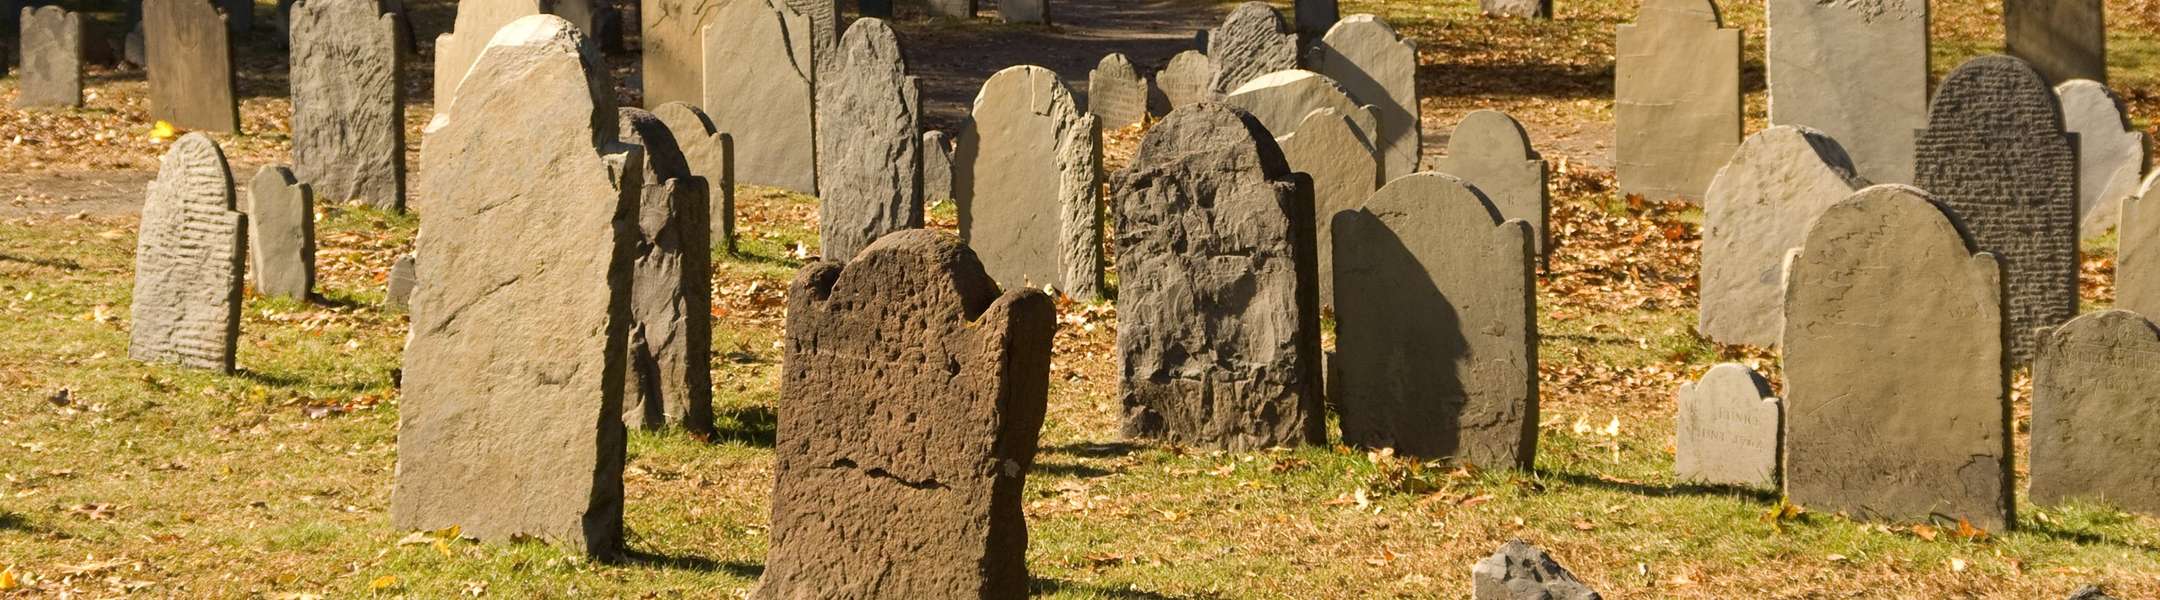 Salem tiene muchos cementerios embrujados, y en el Tour de los Fantasmas de Salem podrás ver uno o más de ellos.